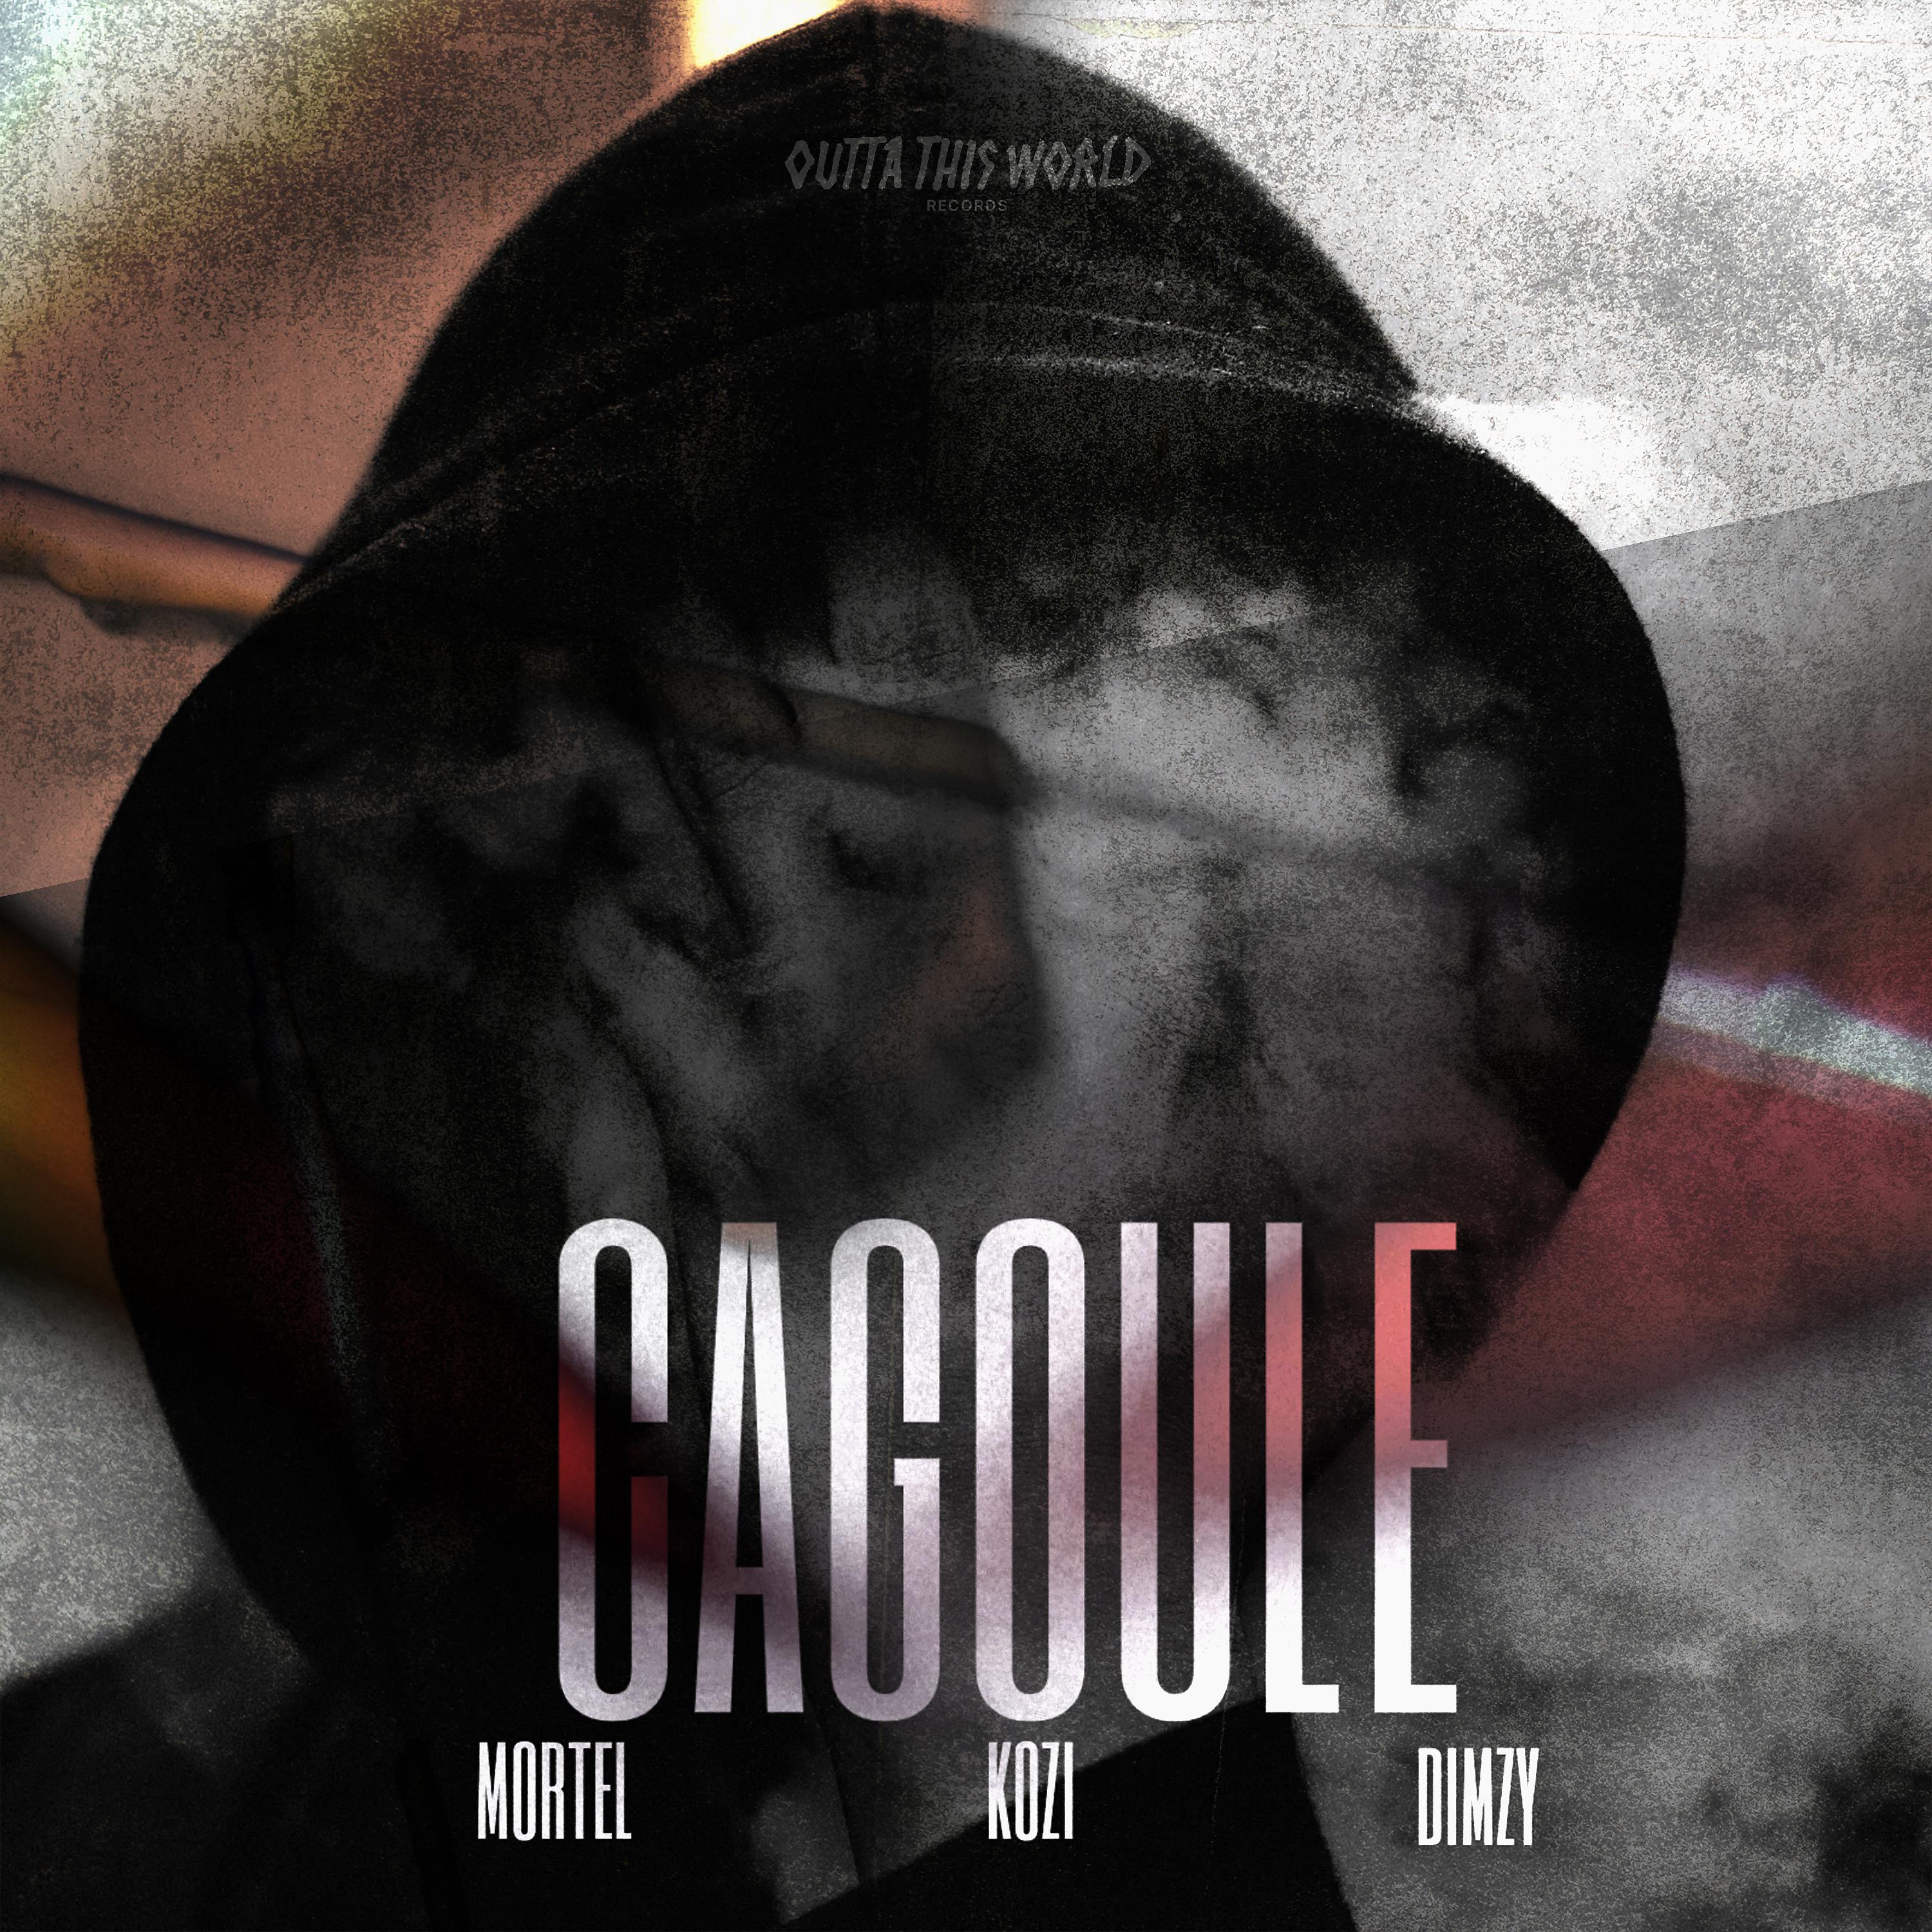 Постер альбома Cagoulé